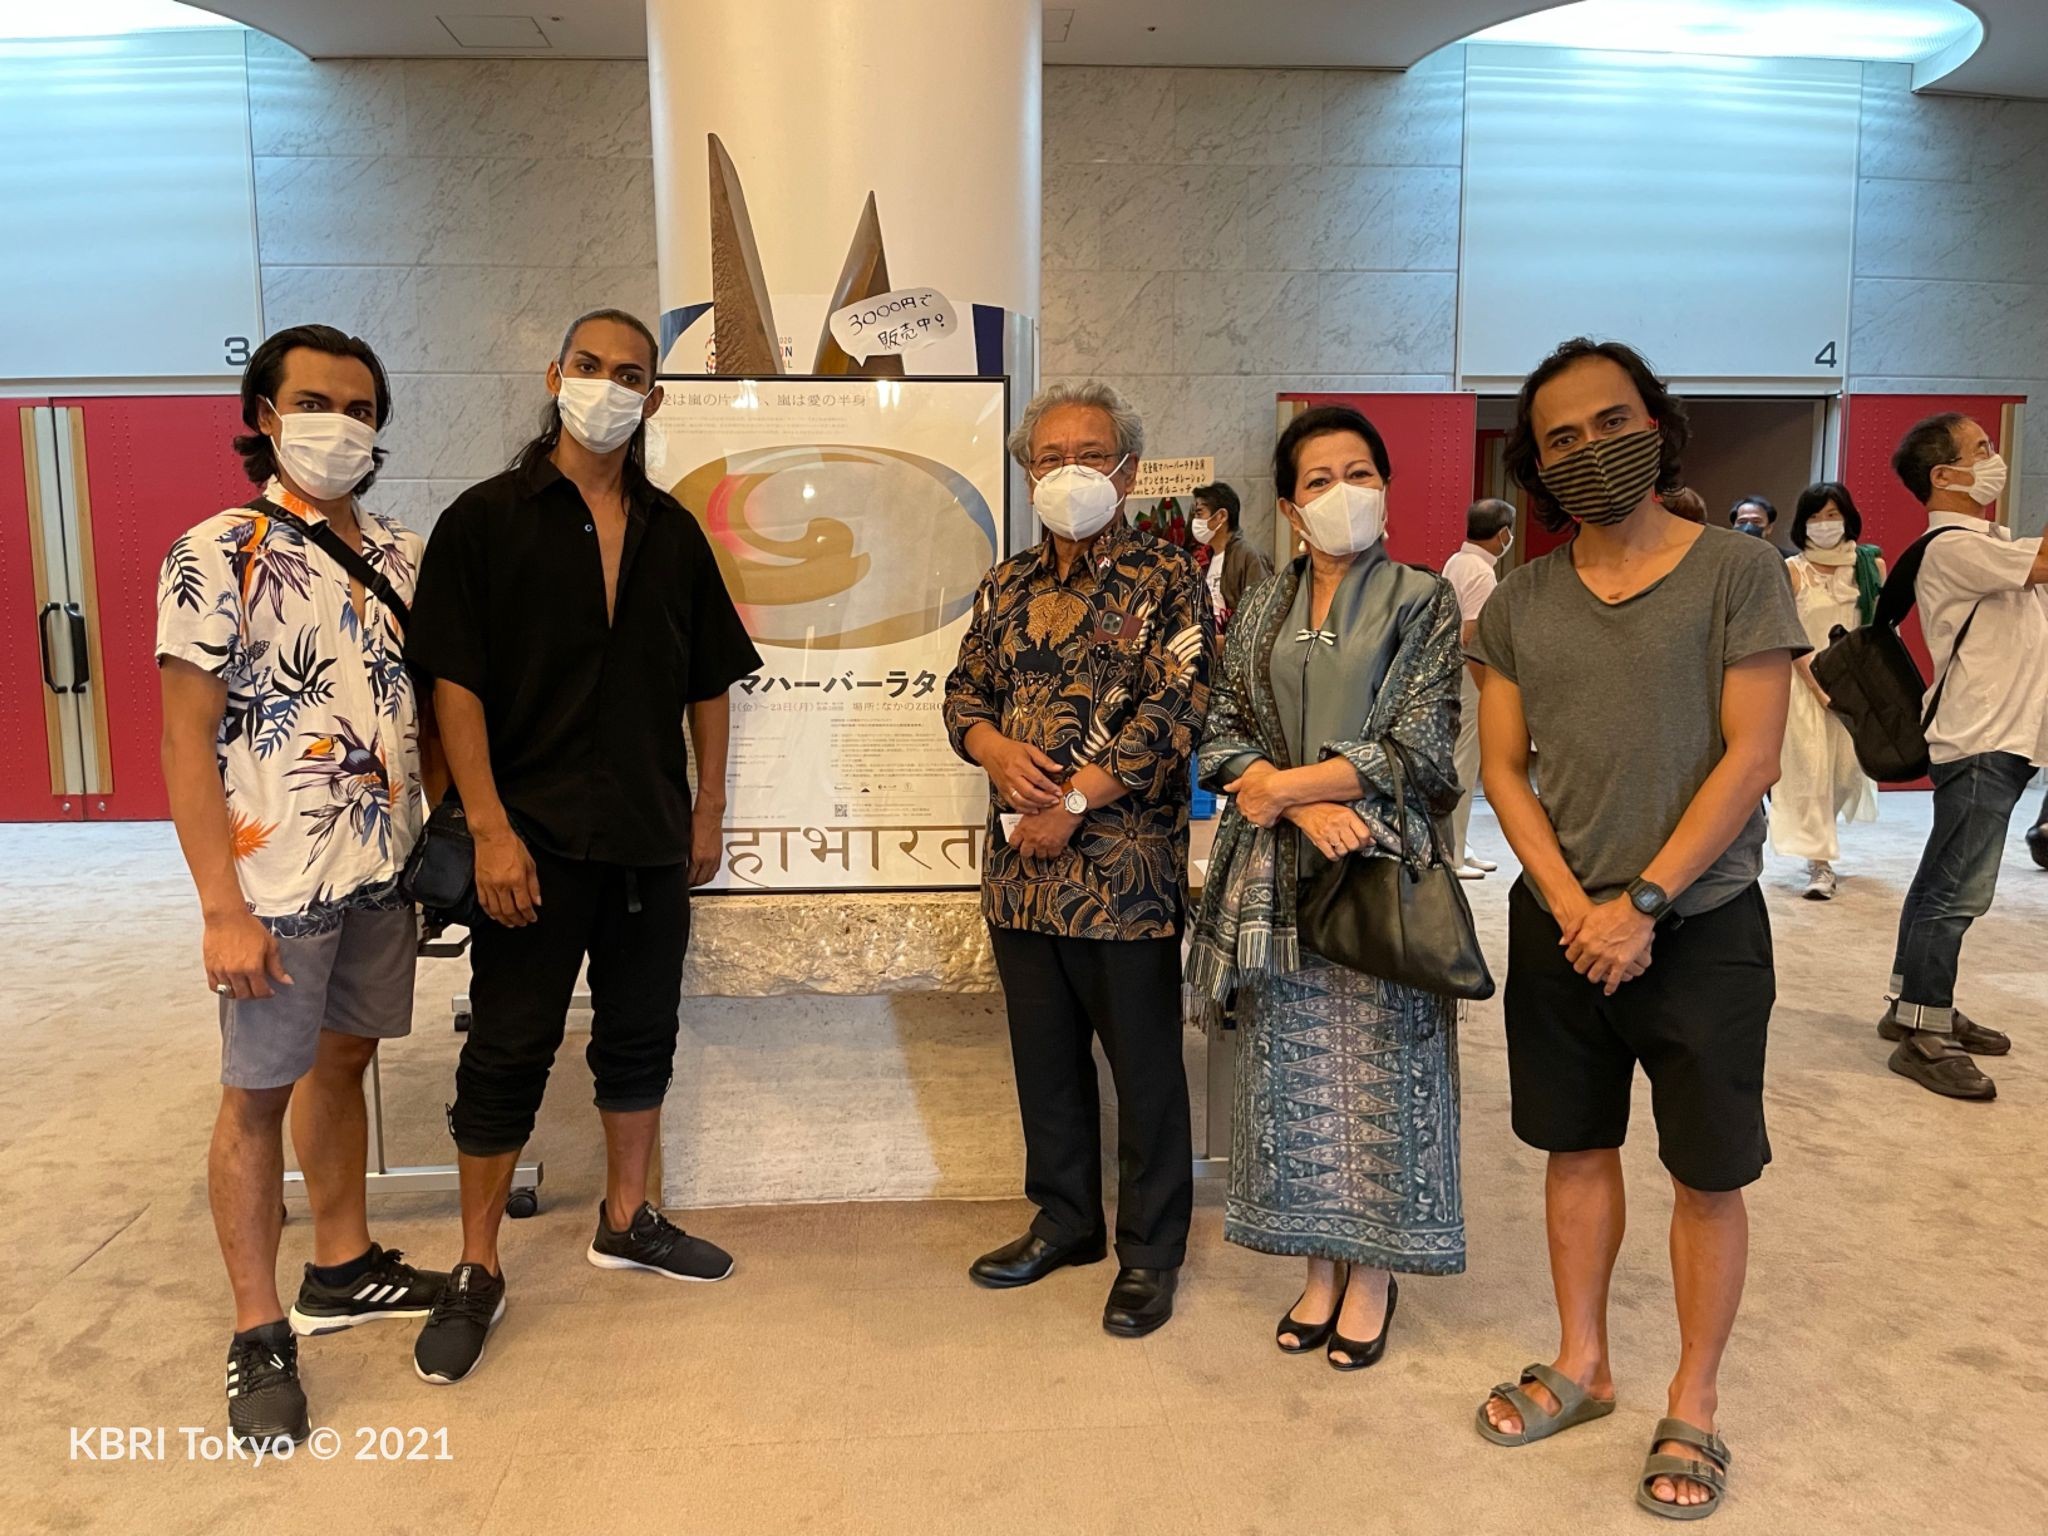 Dubes Heri Akhmadi dan Ibu Nuning Akhmadi bersama 3 pemain Mahabharata asal Indonesia, Hermawan Sinung Nugroho, Suryo Purnomo dan Danang Pamungkas. (Foto: KBRI Tokyo)